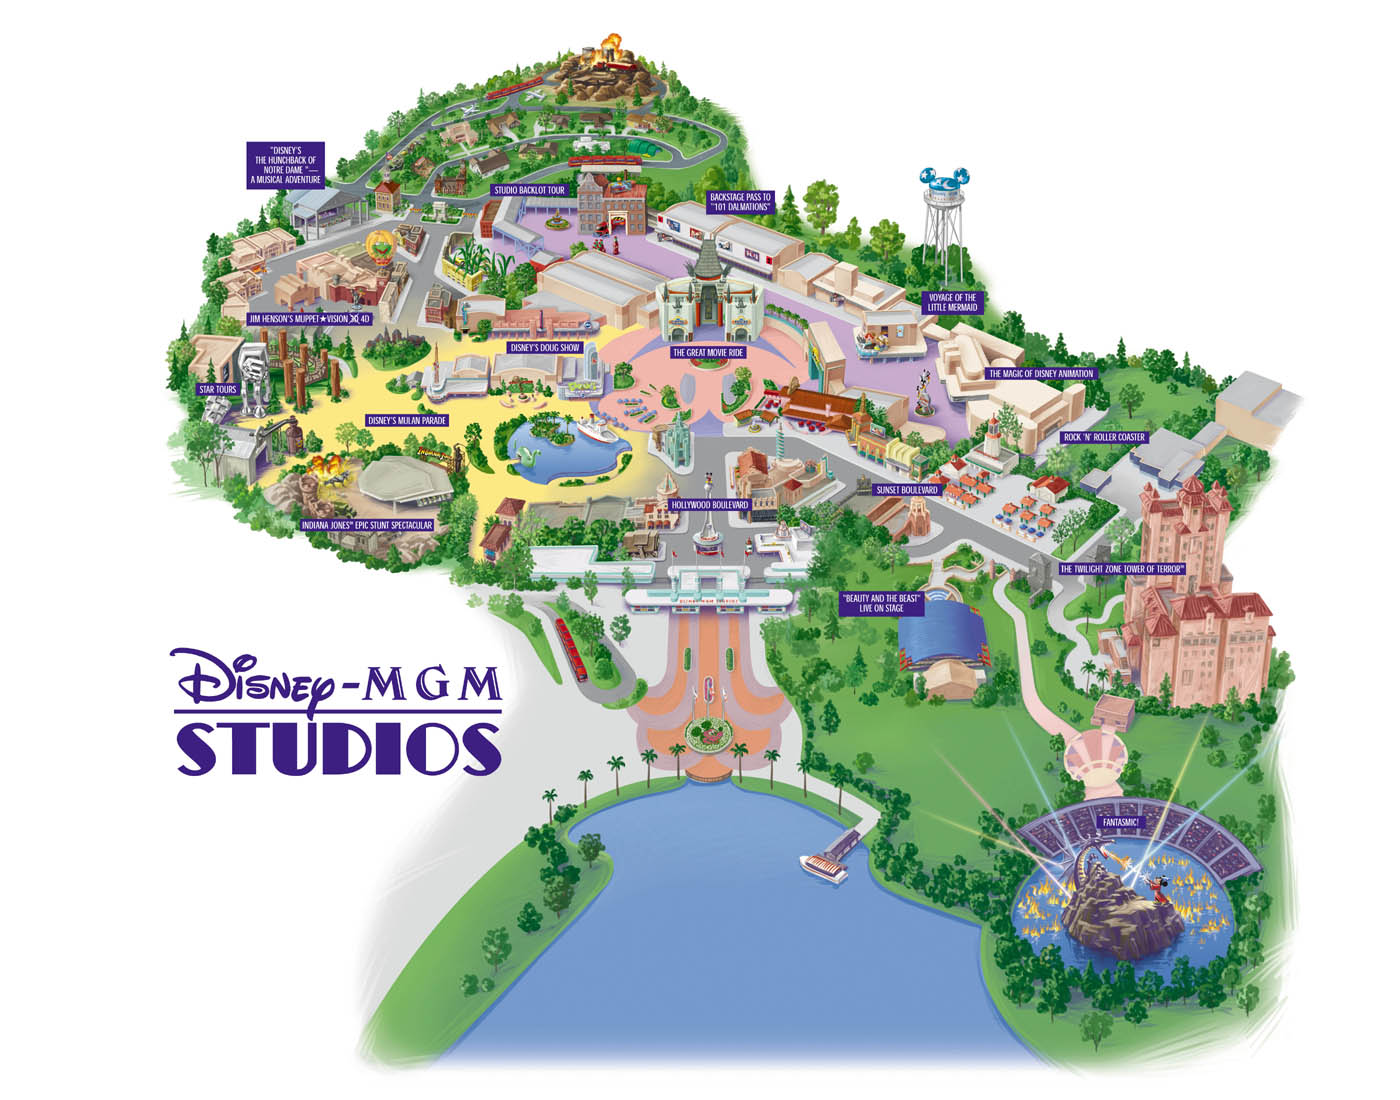 Disney-MGM Studios - Florida Theme Parks .com